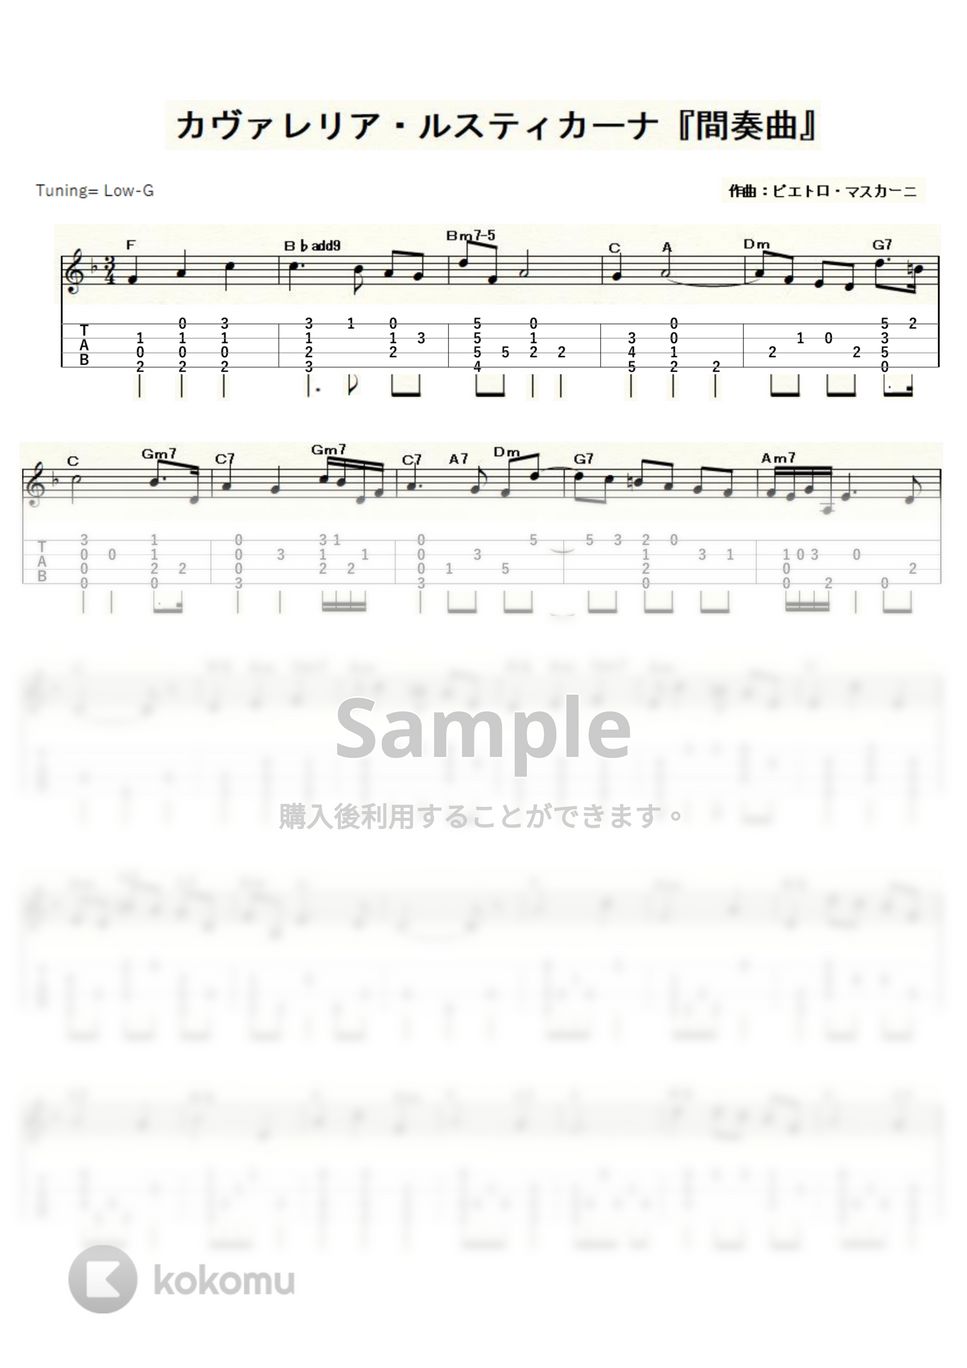 ピエトロ・マスカーニ - カヴァレリア・ルスティカーナ「間奏曲」 (ｳｸﾚﾚｿﾛ/Low-G/中級) by ukulelepapa